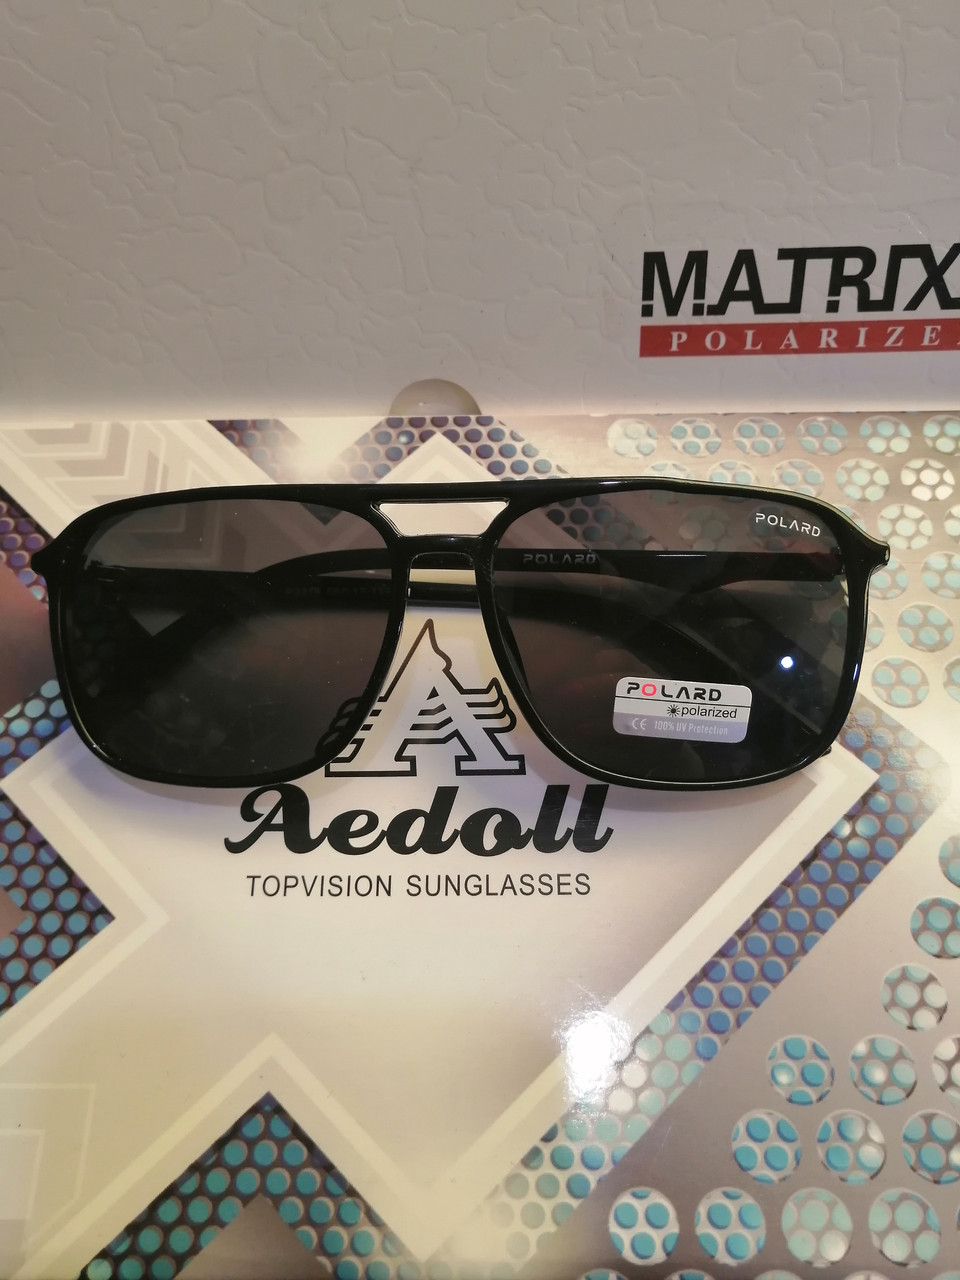 Чоловічі, стильні сонцезахисні окуляри фірми матрикс з полароїдної лізою